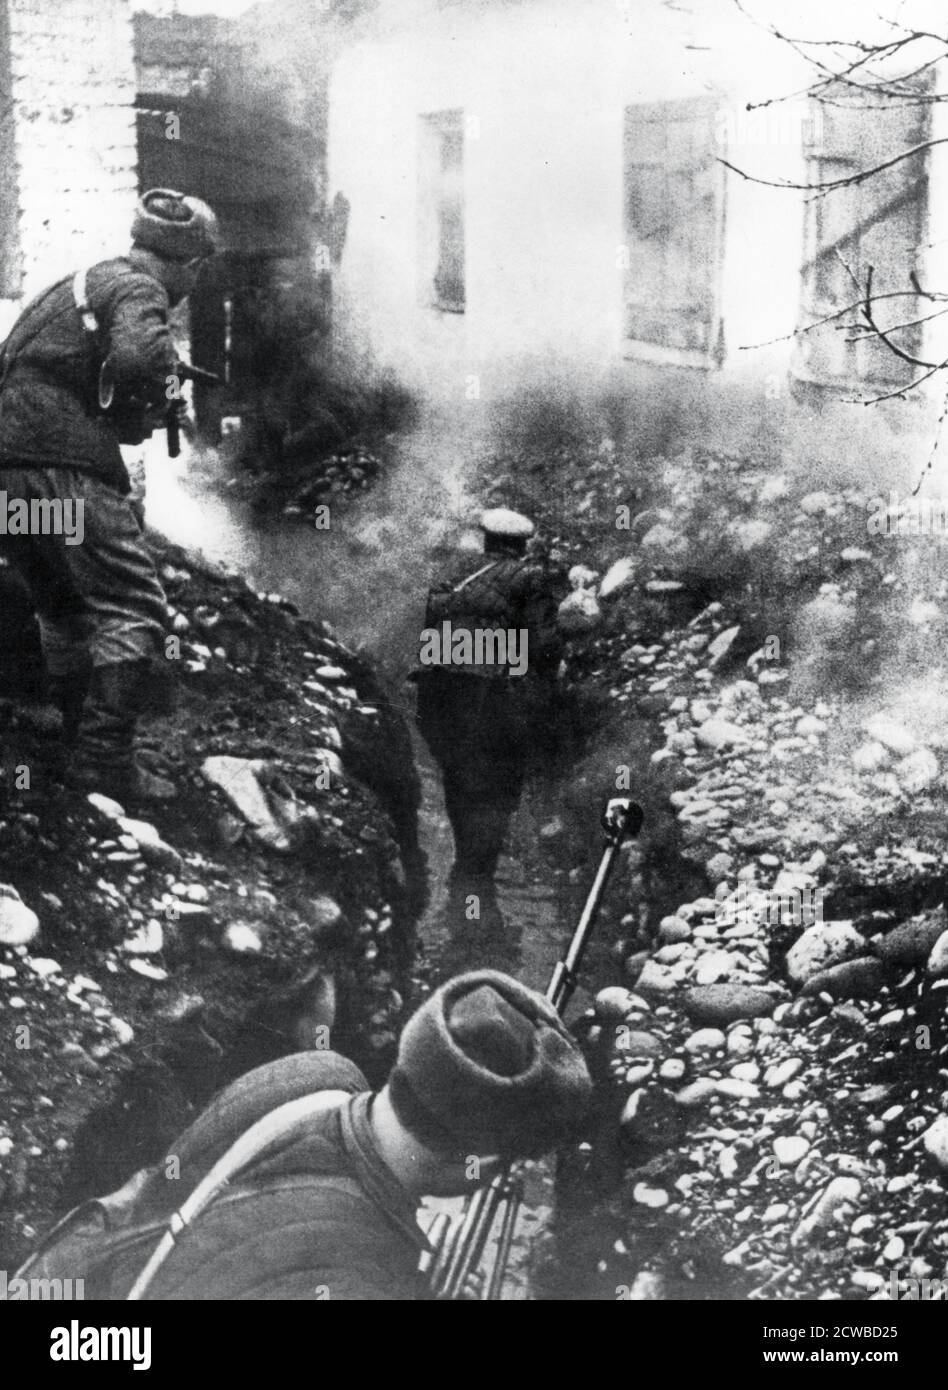 Truppe russe che liberano un villaggio vicino Ordhonikidze, Caucaso, 1942. L'offensiva tedesca per assicurare i giacimenti petroliferi dell'Azerbaigian è stata arrestata dall'esercito rosso nel Caucaso nell'autunno del 1942. Dal gennaio 1943, diversi contro-offensivi russi, insieme all'imminente disastro di Stalingrado, costrinsero i tedeschi a ritirarsi. Il fotografo è sconosciuto. Foto Stock